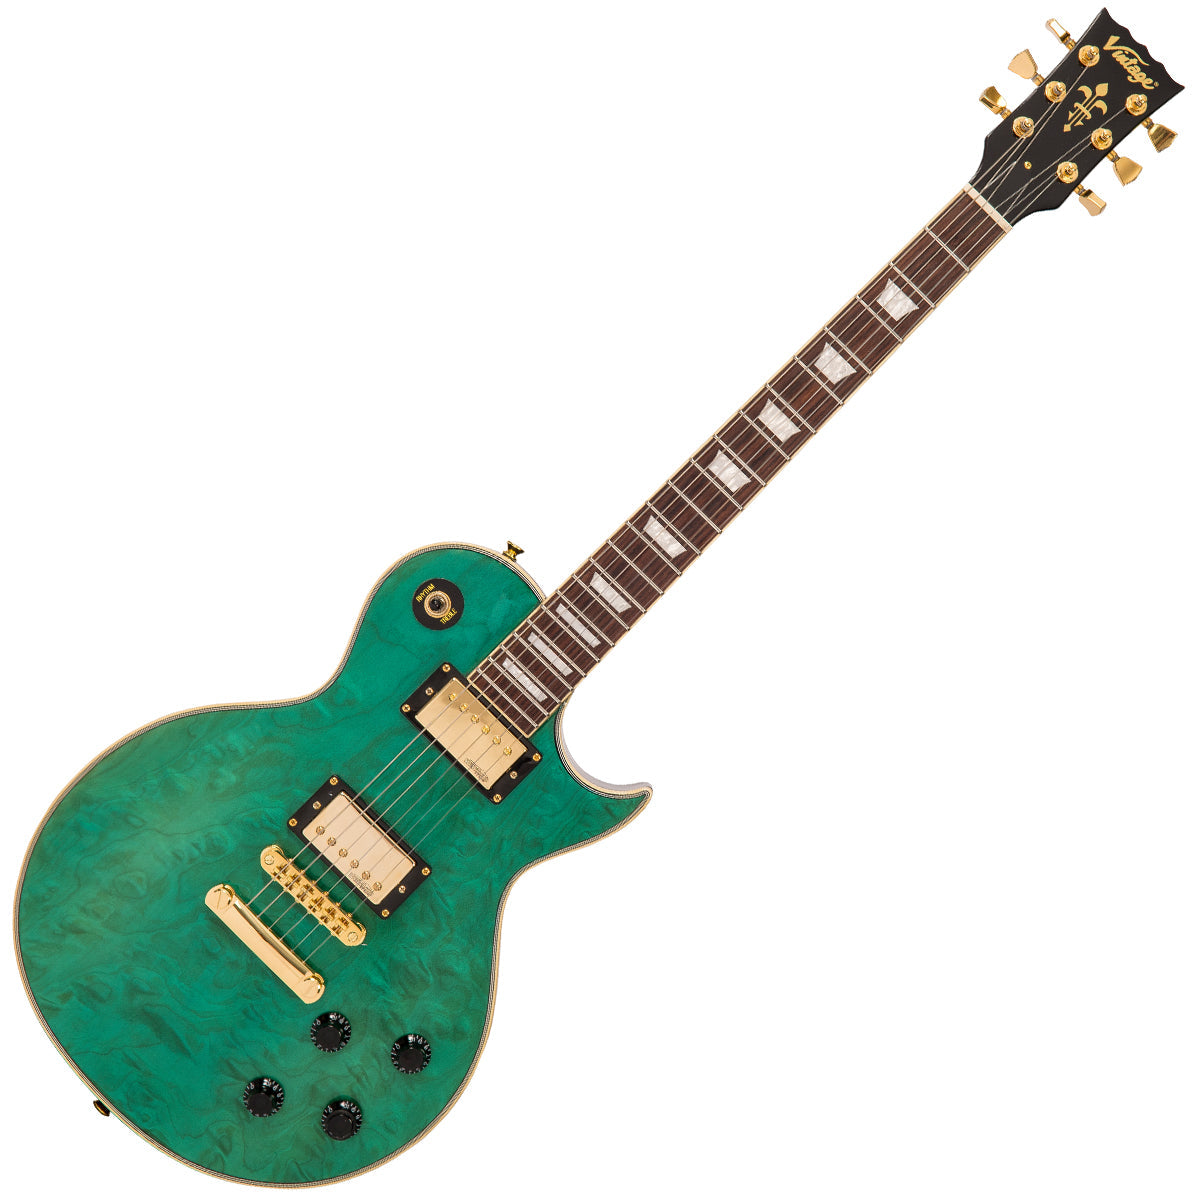 SOLD – Vintage V100 ProShop Unique ~ Green Quilt, Electrics for sale at Richards Guitars.